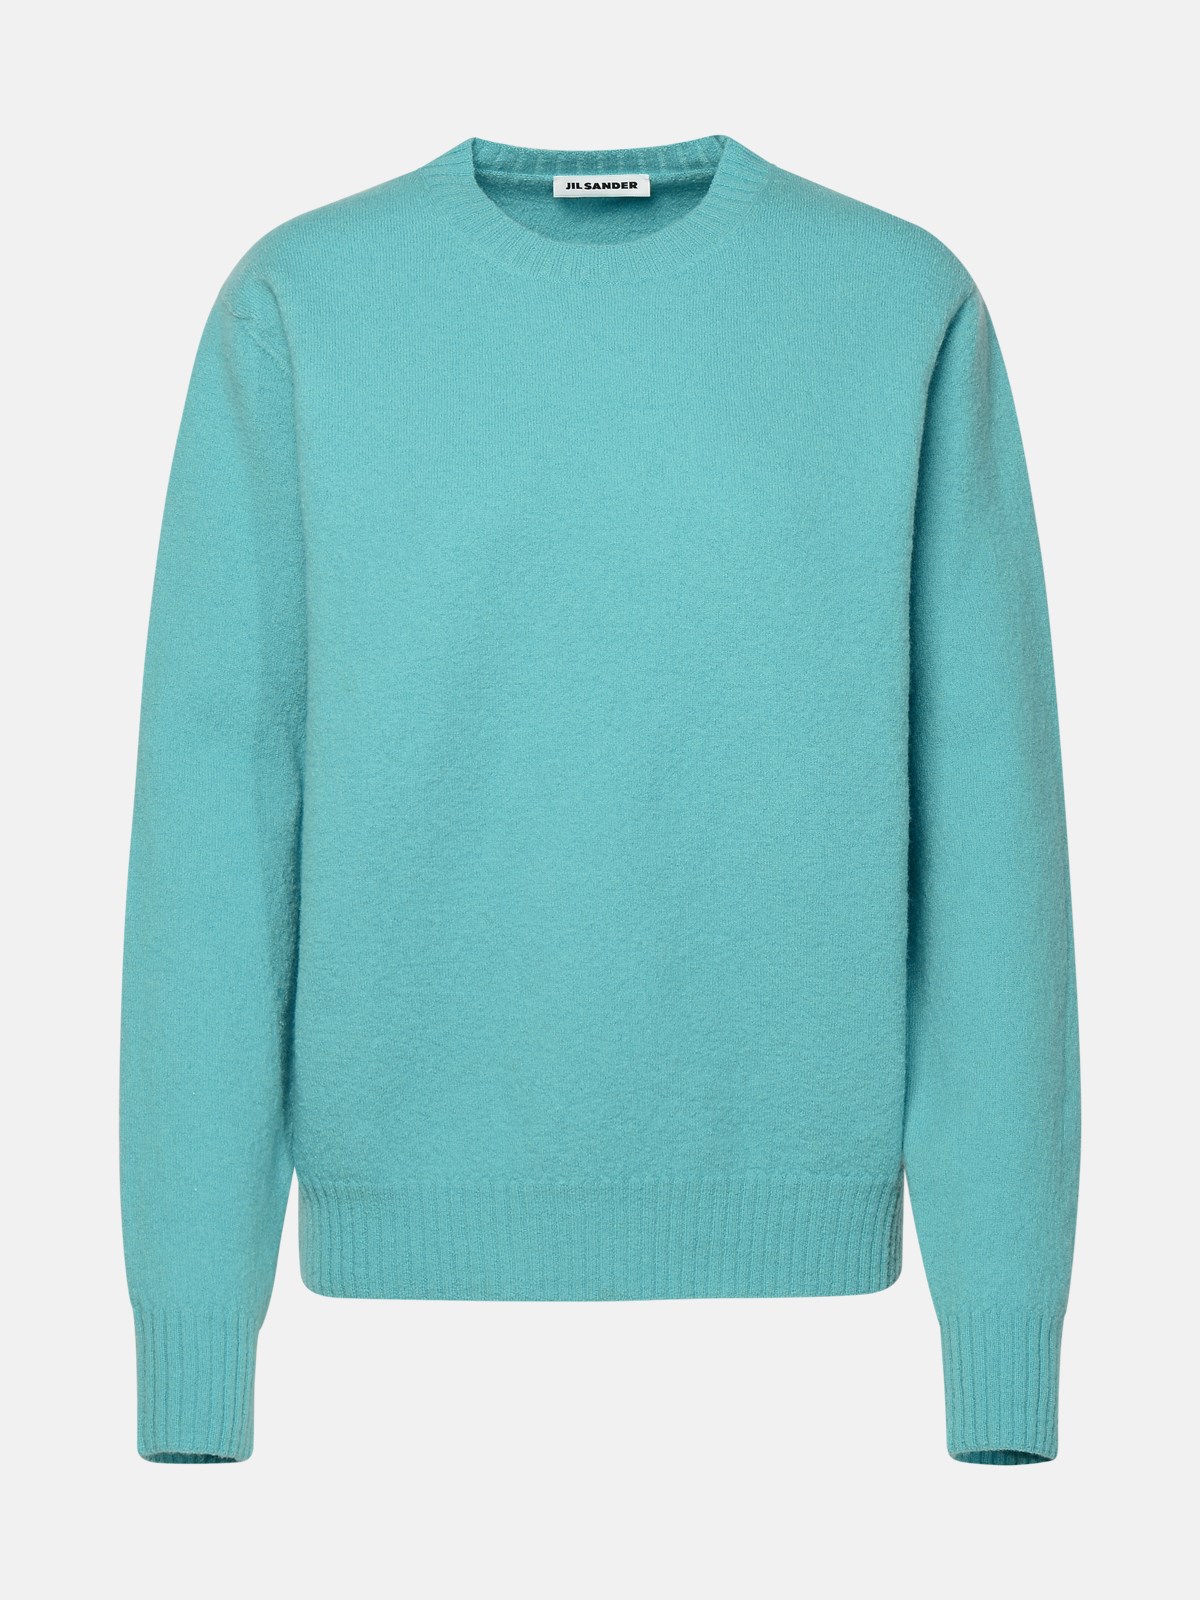 Jil Sander Turquoise Wool Sweater In Light Blue